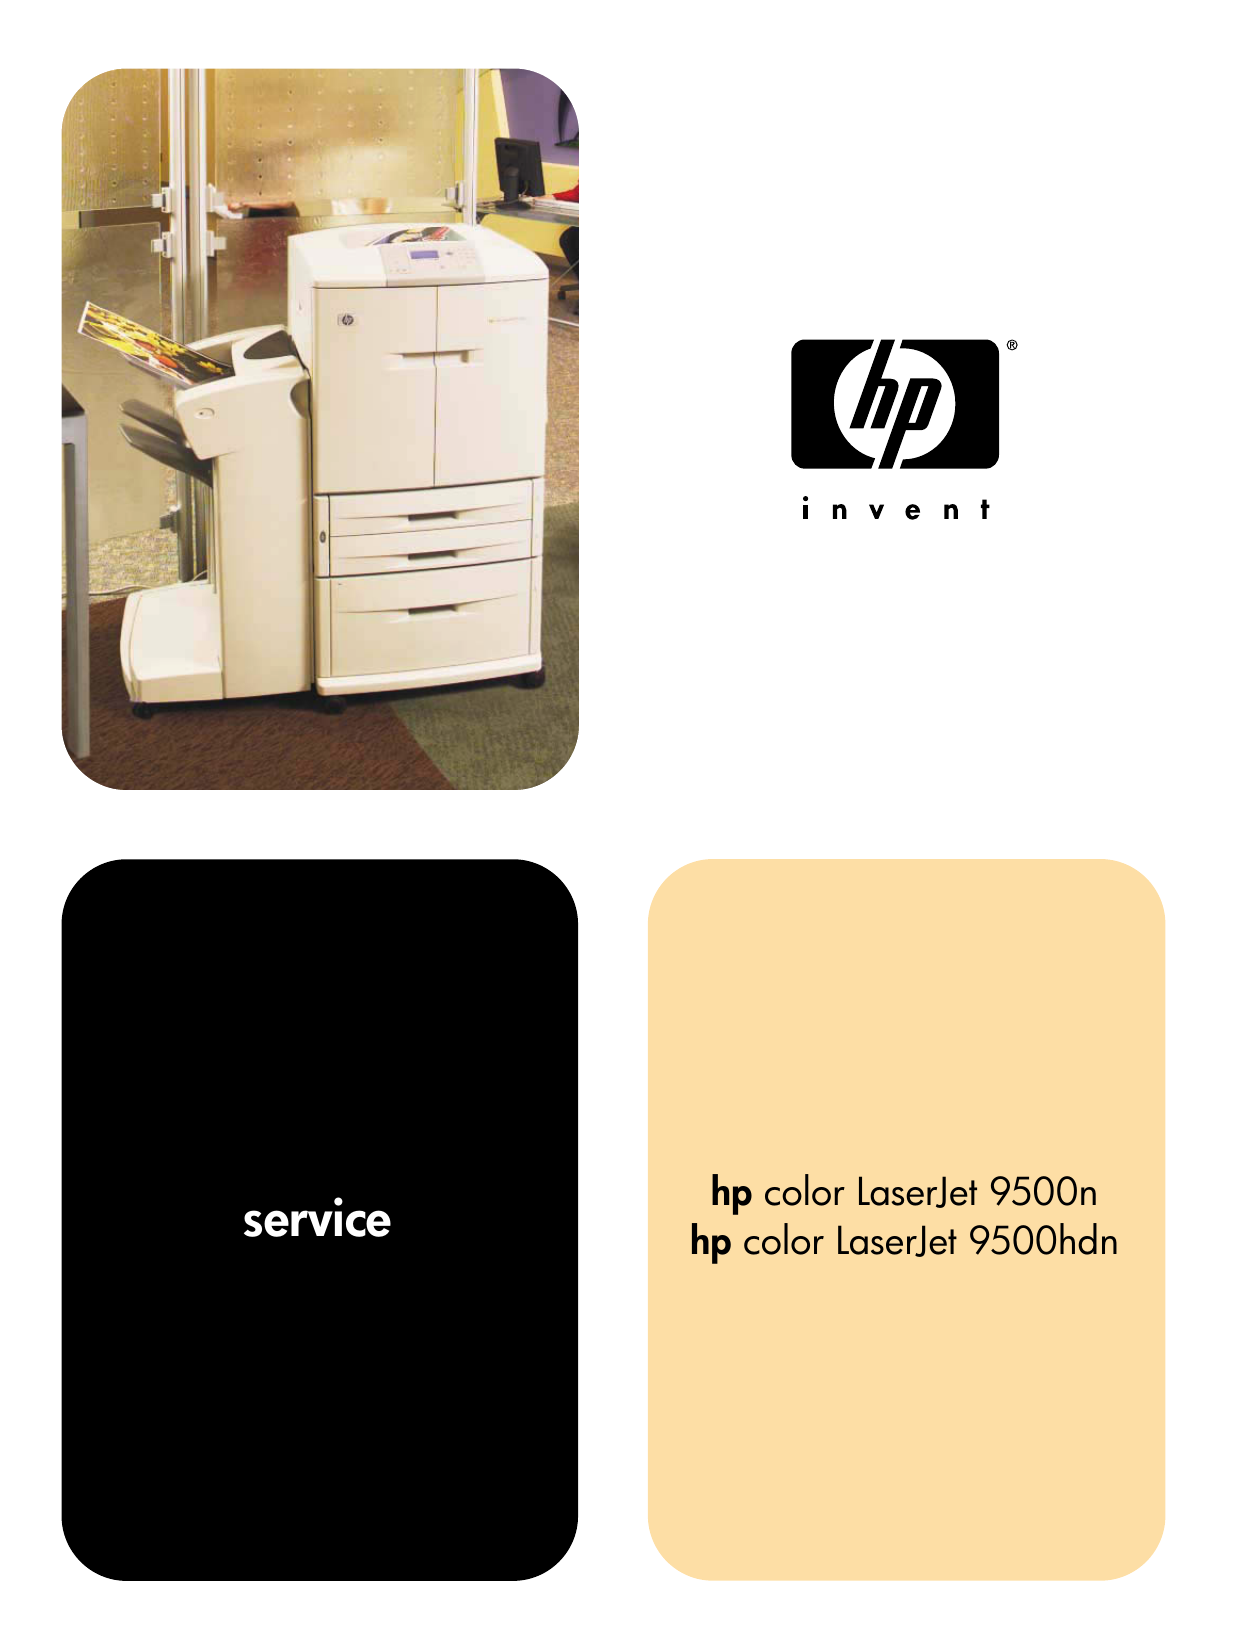 HP Color Laserjet 9500, 9500N, 9500HDN color laser printer service guide Preview image 6